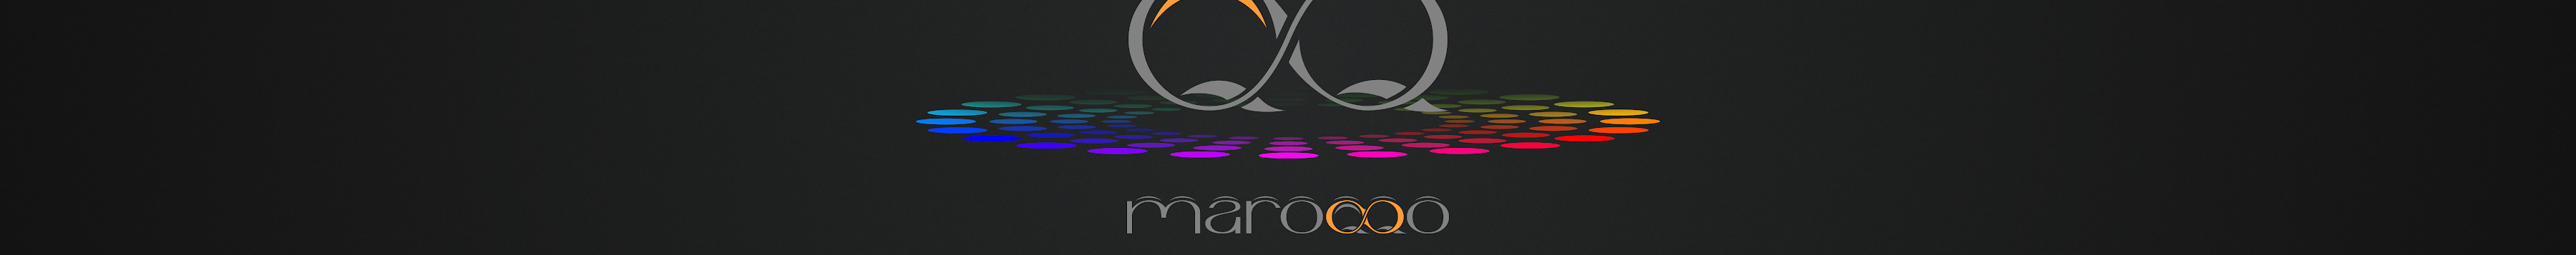 MAROQQO digital media's profile banner